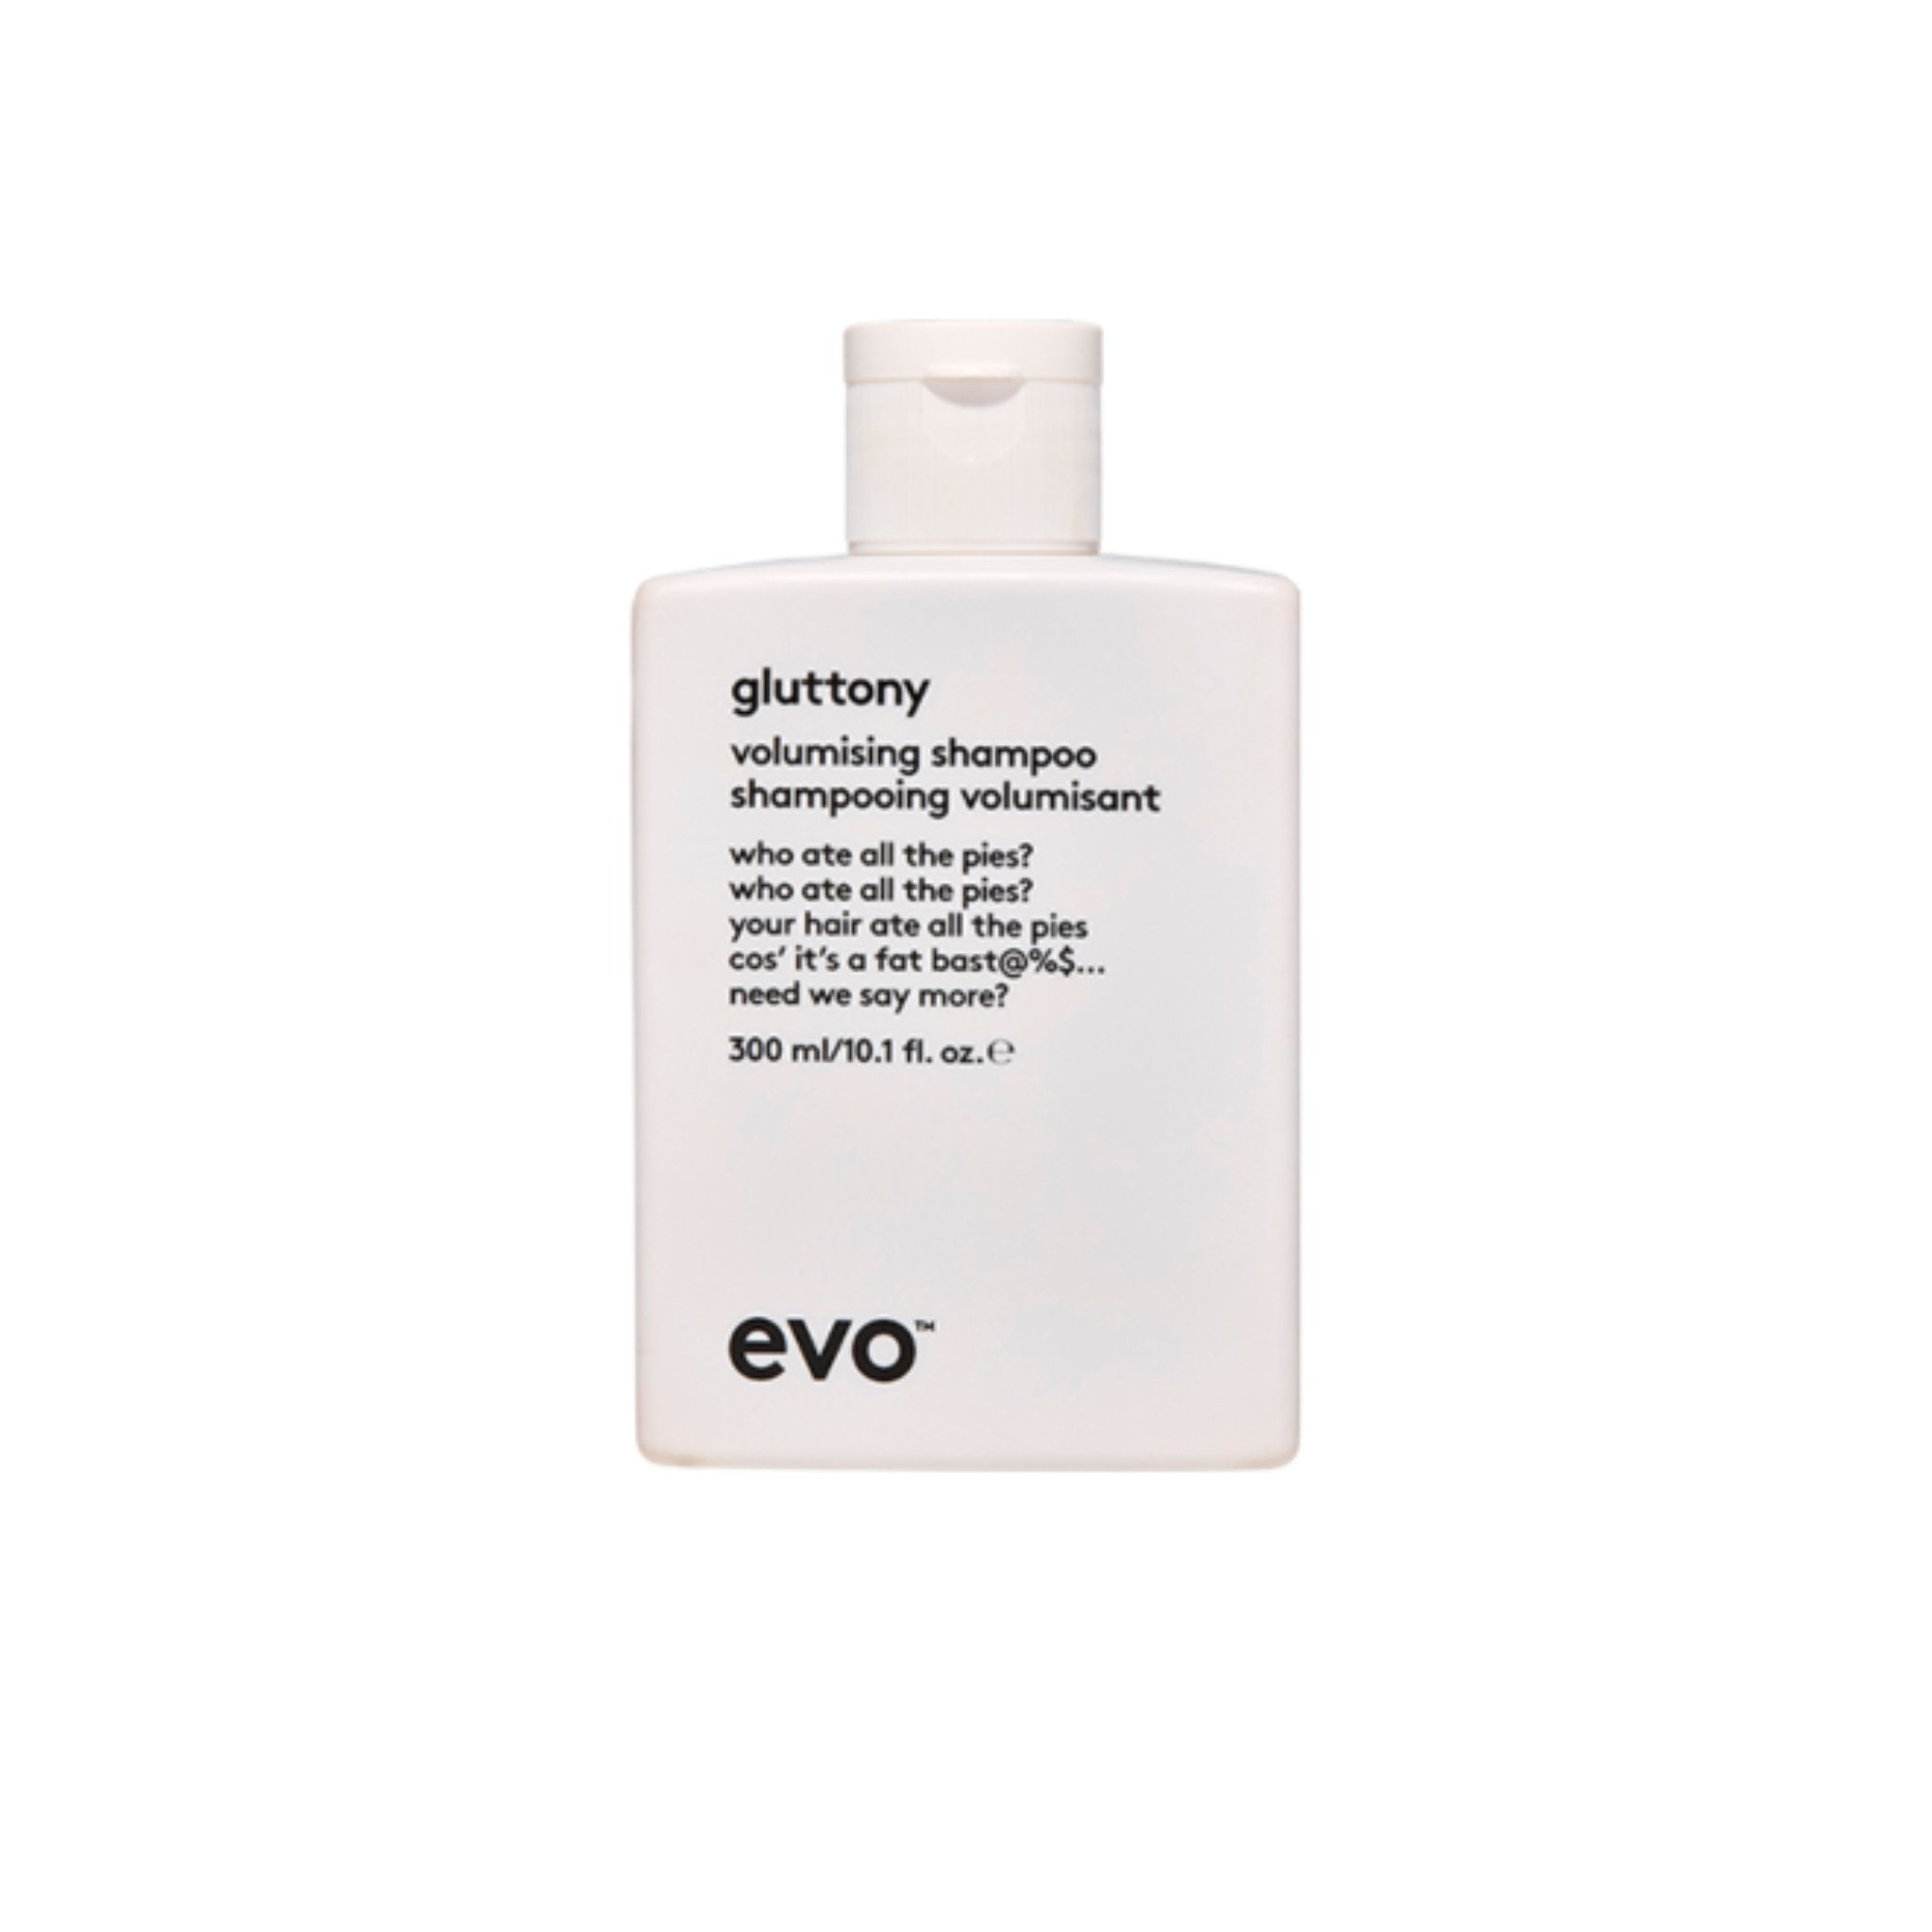 Evo. Gluttony Shampoing Volumisant - 300 ml - Concept C. Shop